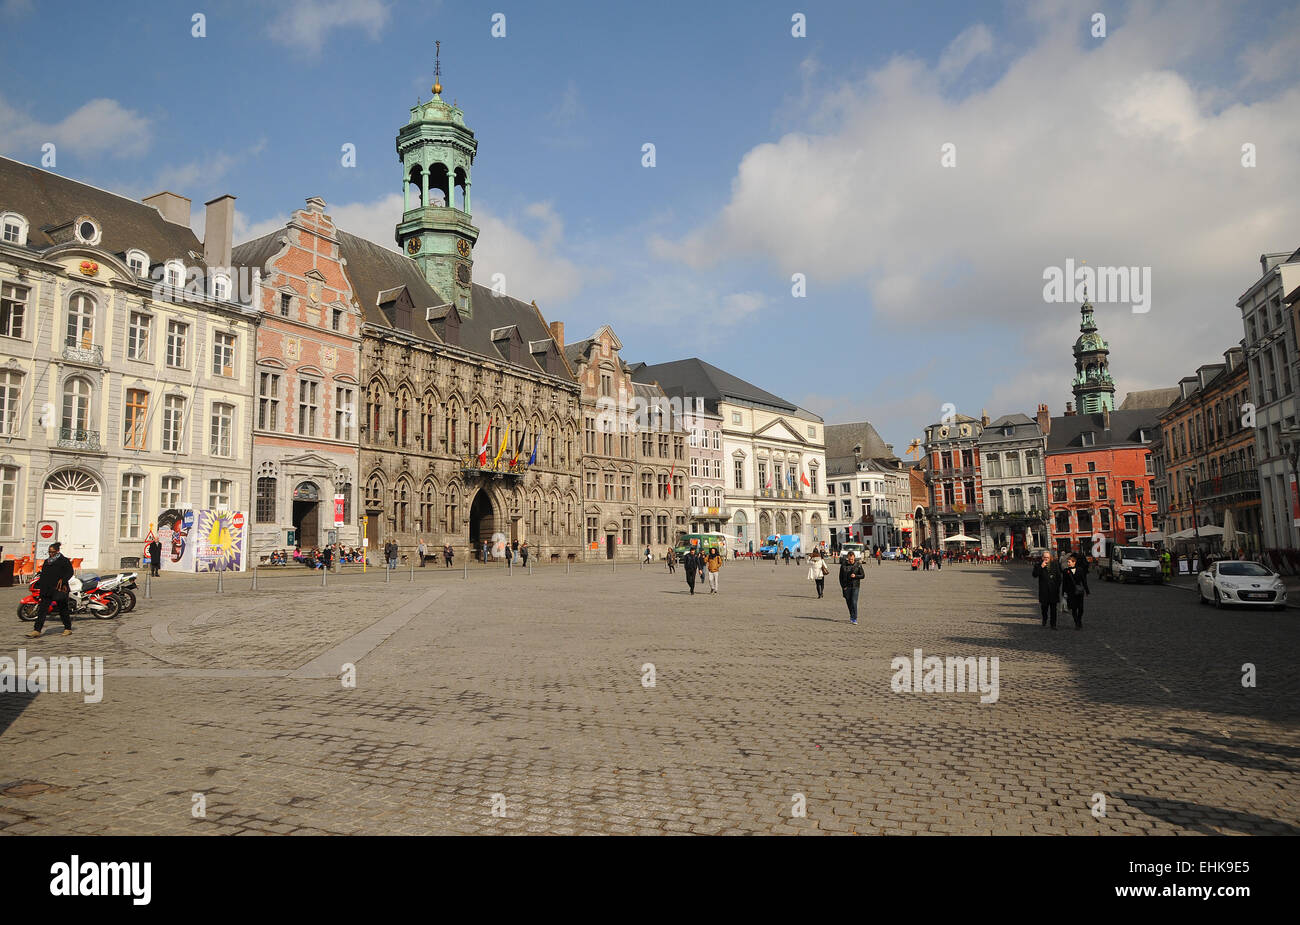 Der alte Platz der Grand Place und das gotische Rathaus mit Renaissance Periode Glockenturm. Mons, Belgien Kulturstadt Stockfoto